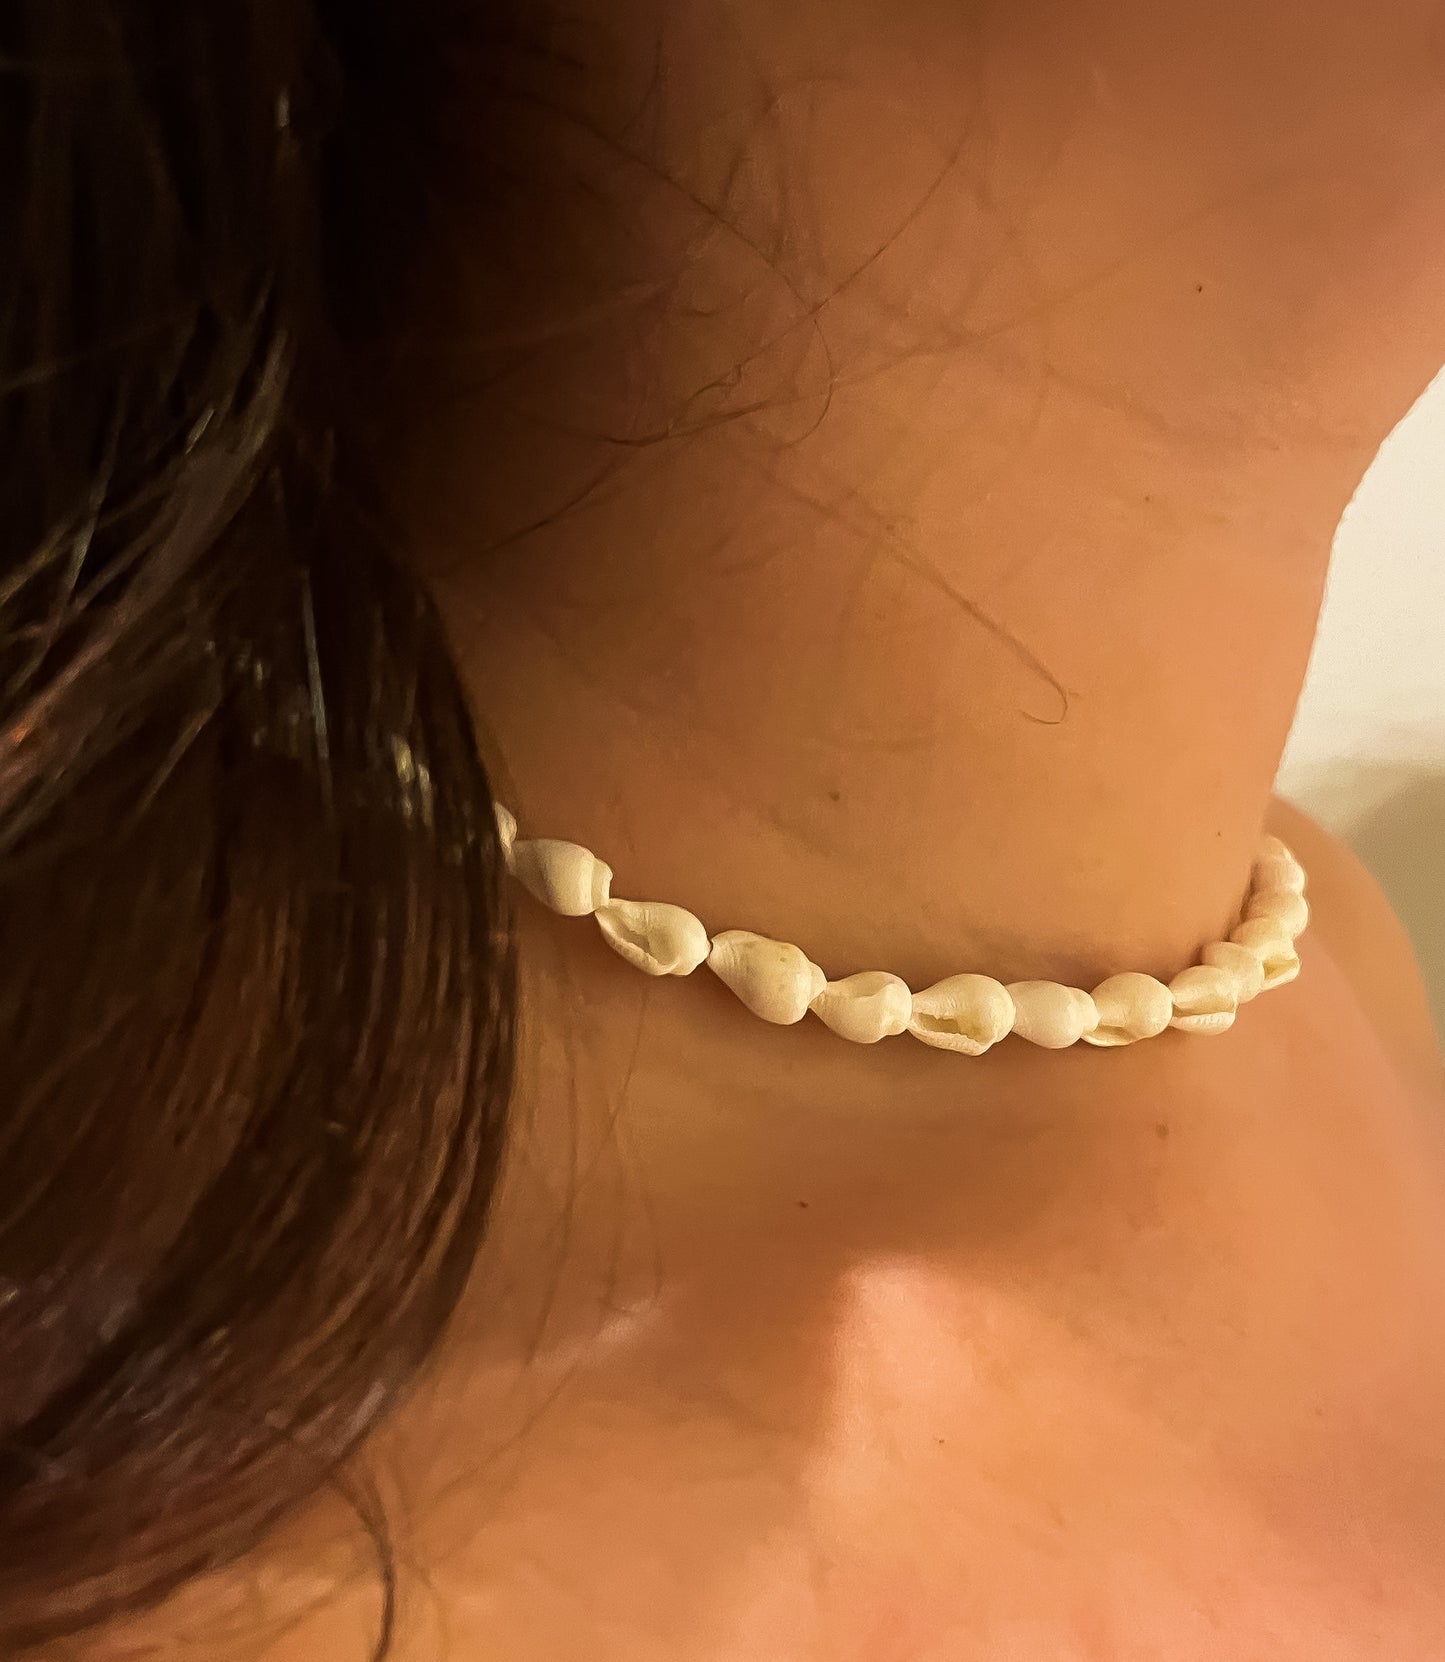 Model wearing seashell necklace